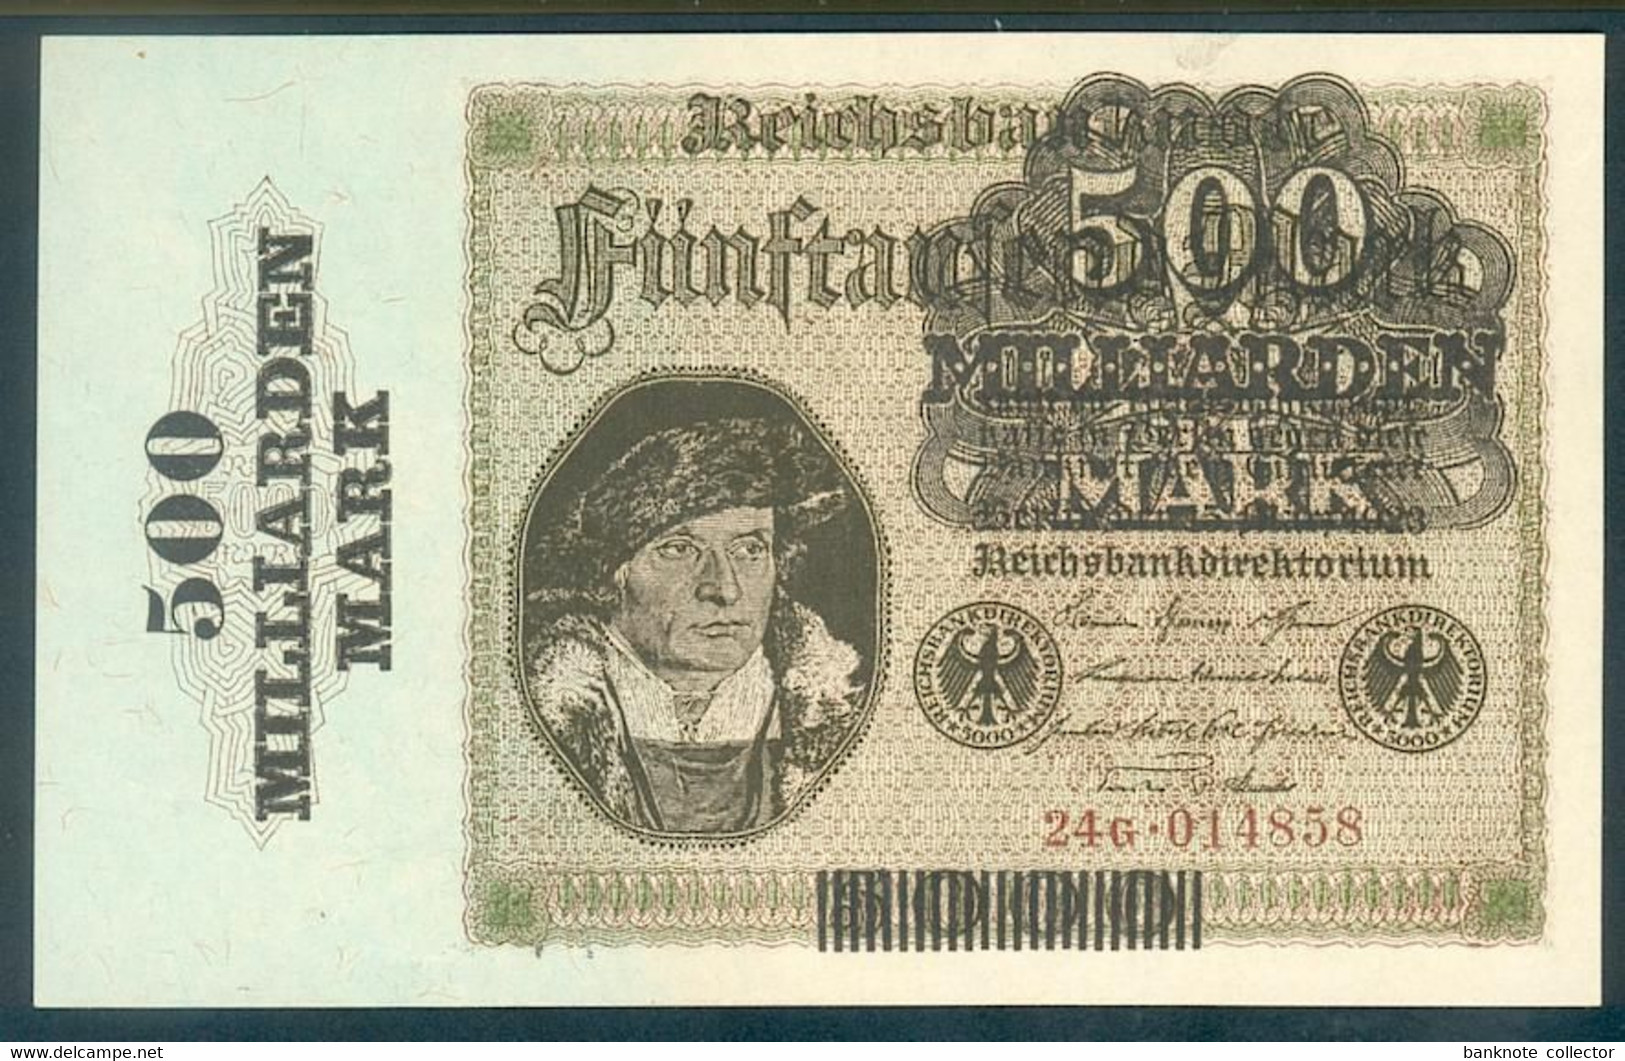 German Rentenmark Wallpapers